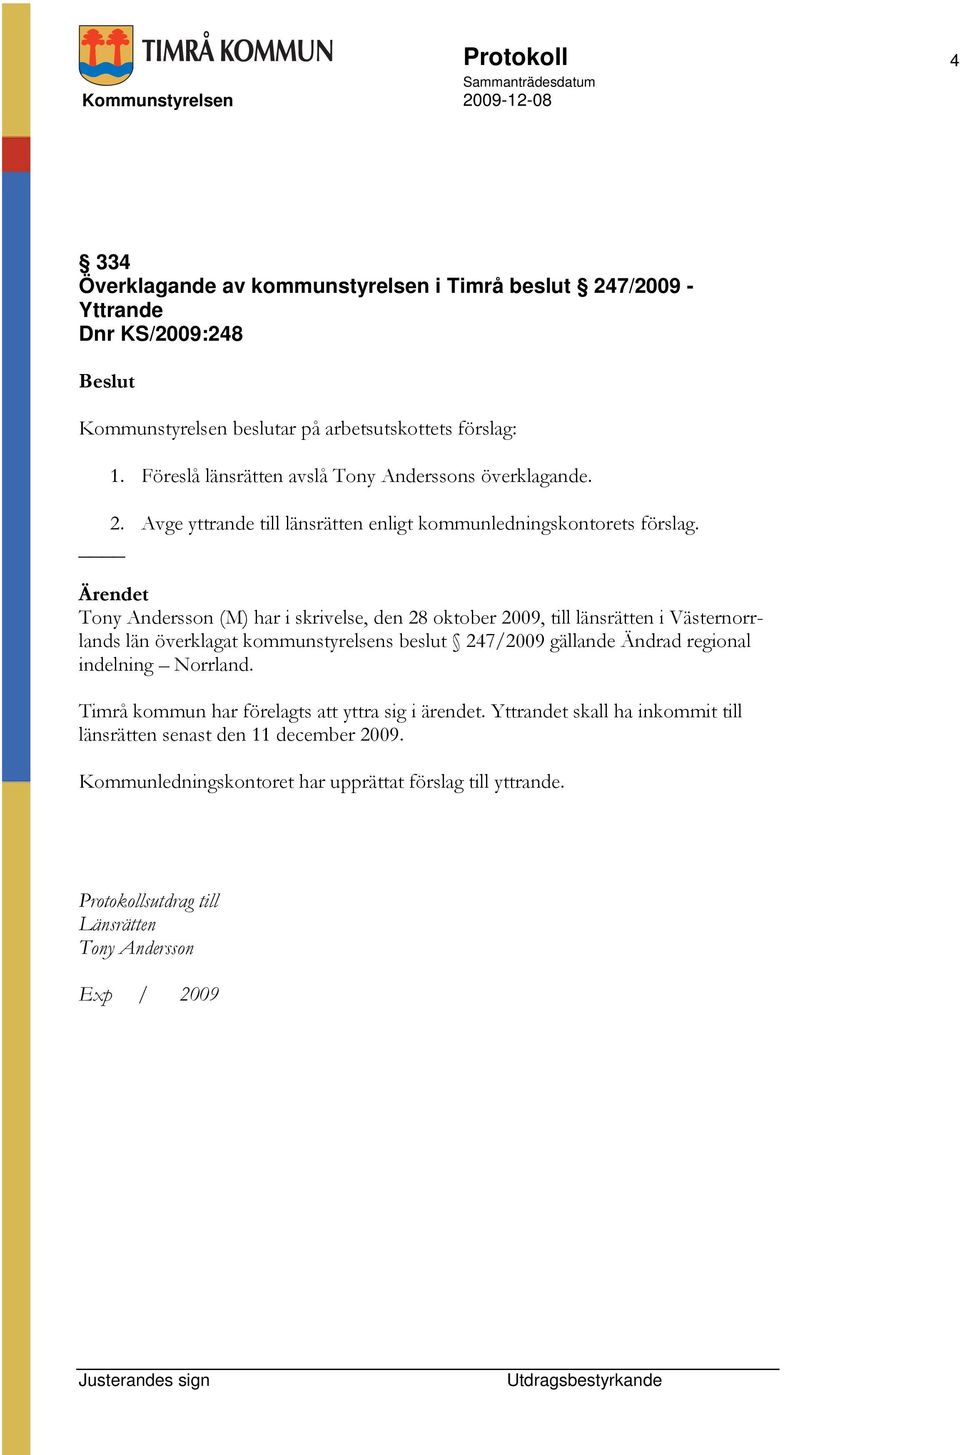 Tony Andersson (M) har i skrivelse, den 28 oktober 2009, till länsrätten i Västernorrlands län överklagat kommunstyrelsens beslut 247/2009 gällande Ändrad regional